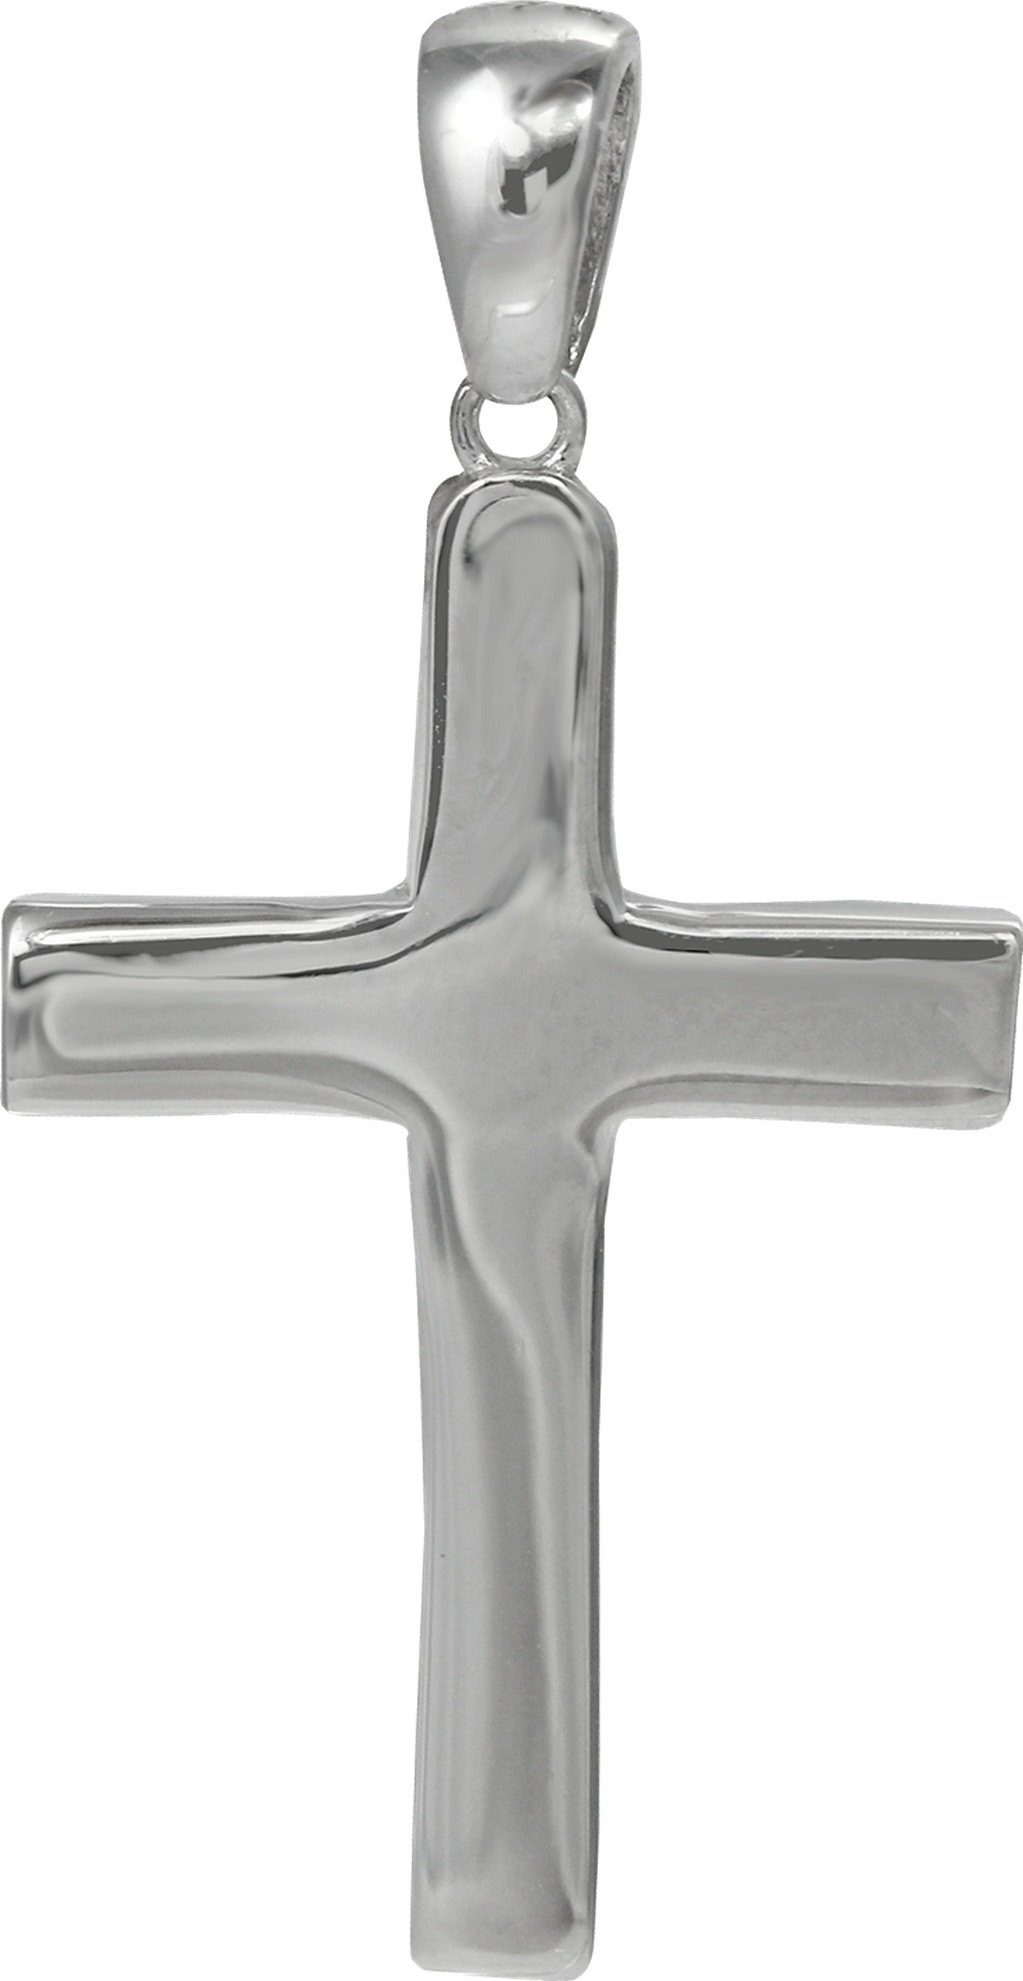 Kreuzanhänger Silber, Kettenanhänger silber -Kreuz-, Großes Sterling SilberDream Ketten Anhänger 925 SilberDream